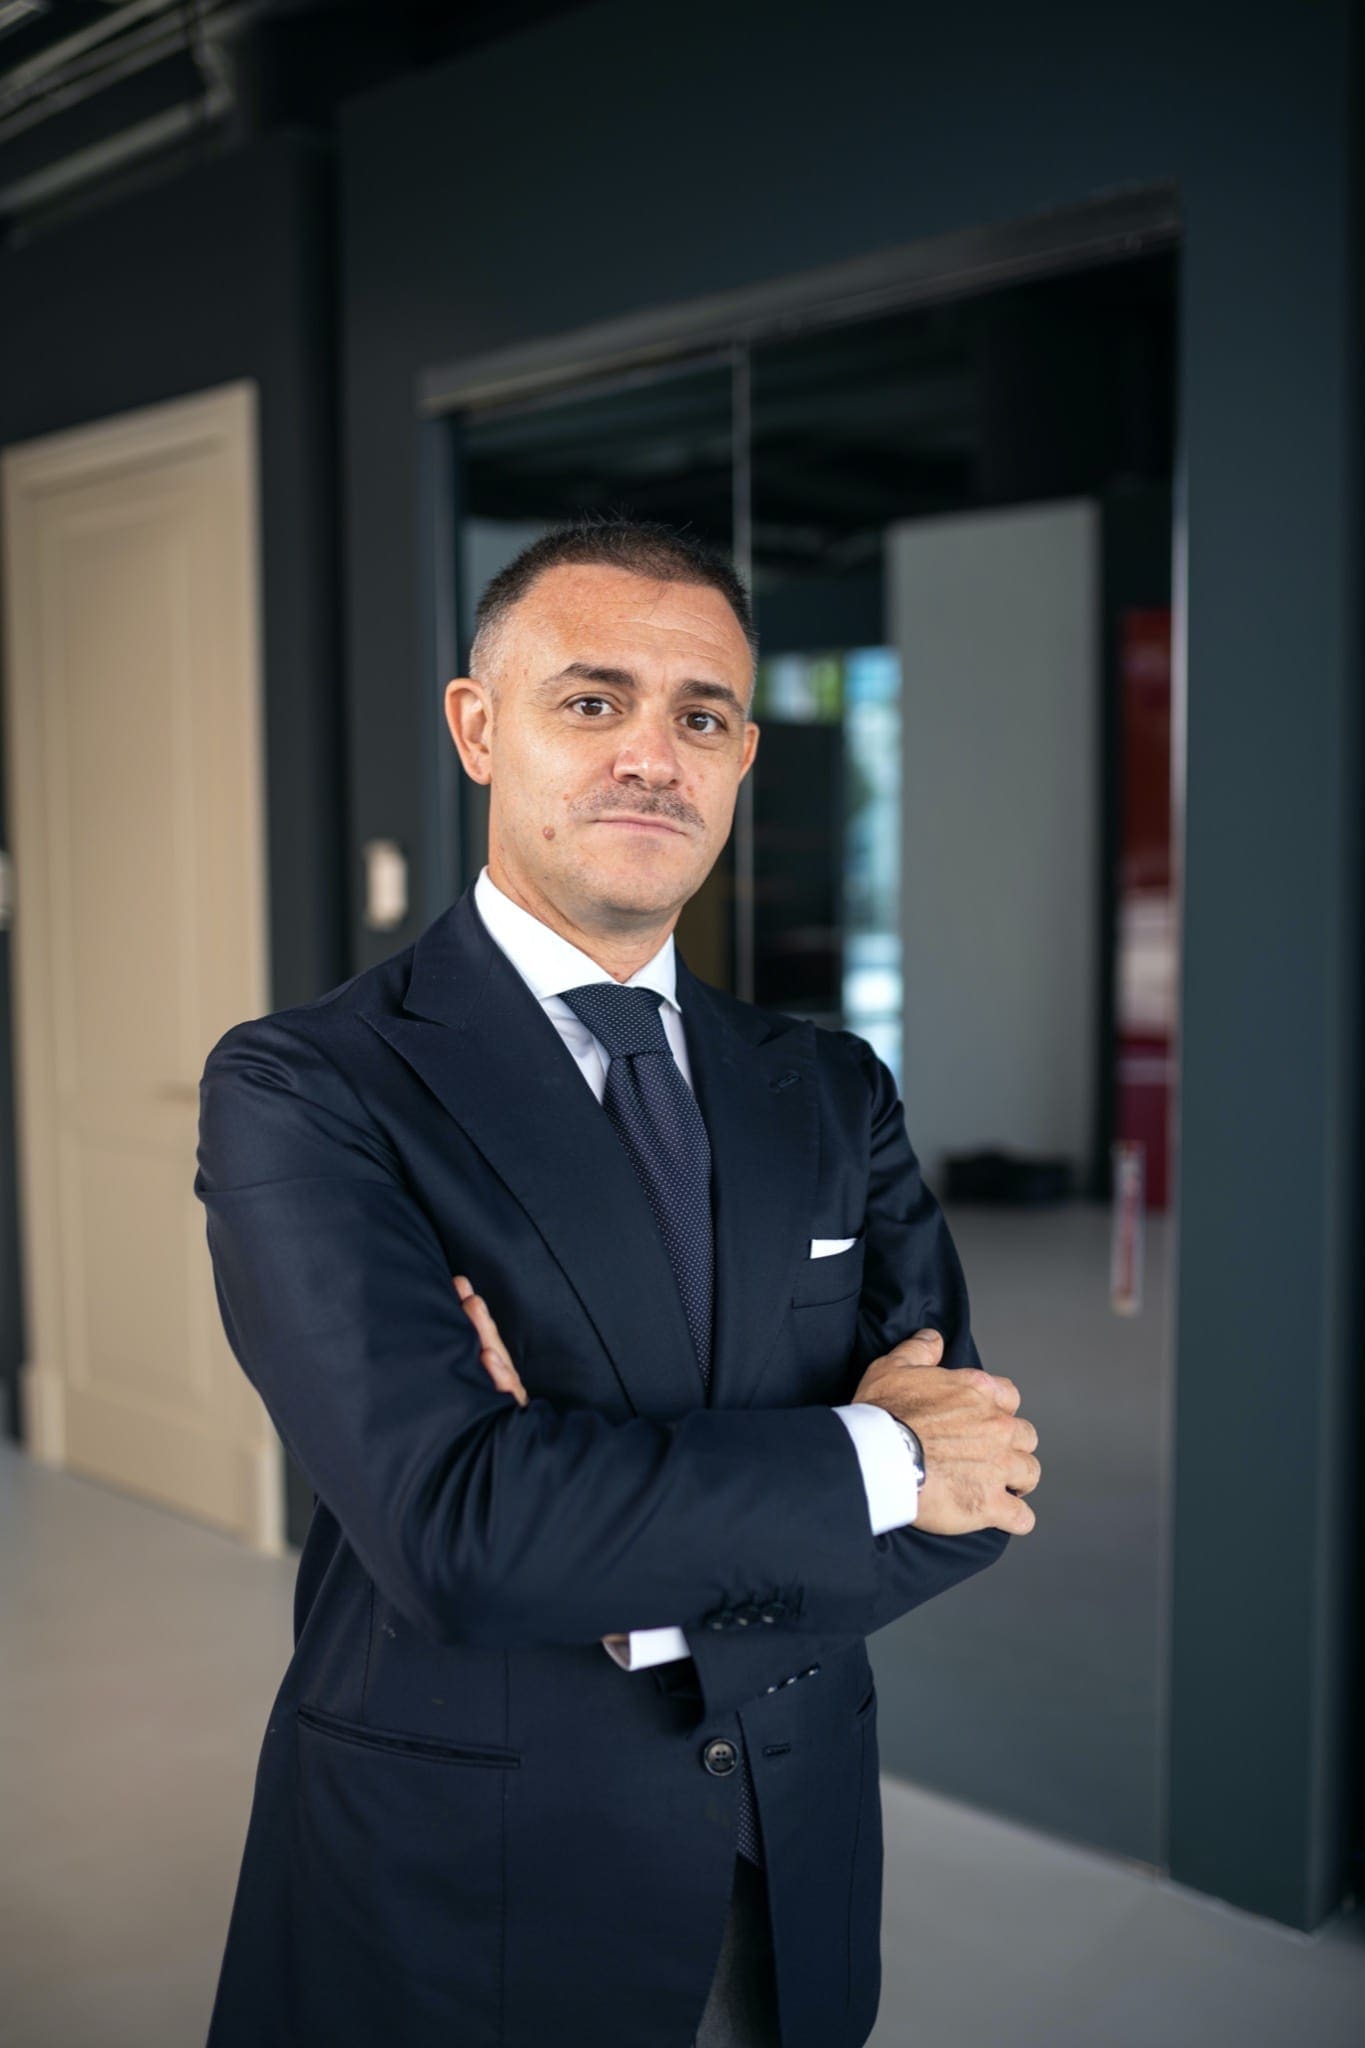 DSC6384 copy - Francesco Curcio, director general Pinum Doors & Windows: „Ne-am propus să devenim unul dintre liderii de pe piața tâmplăriei de PVC și aluminiu”